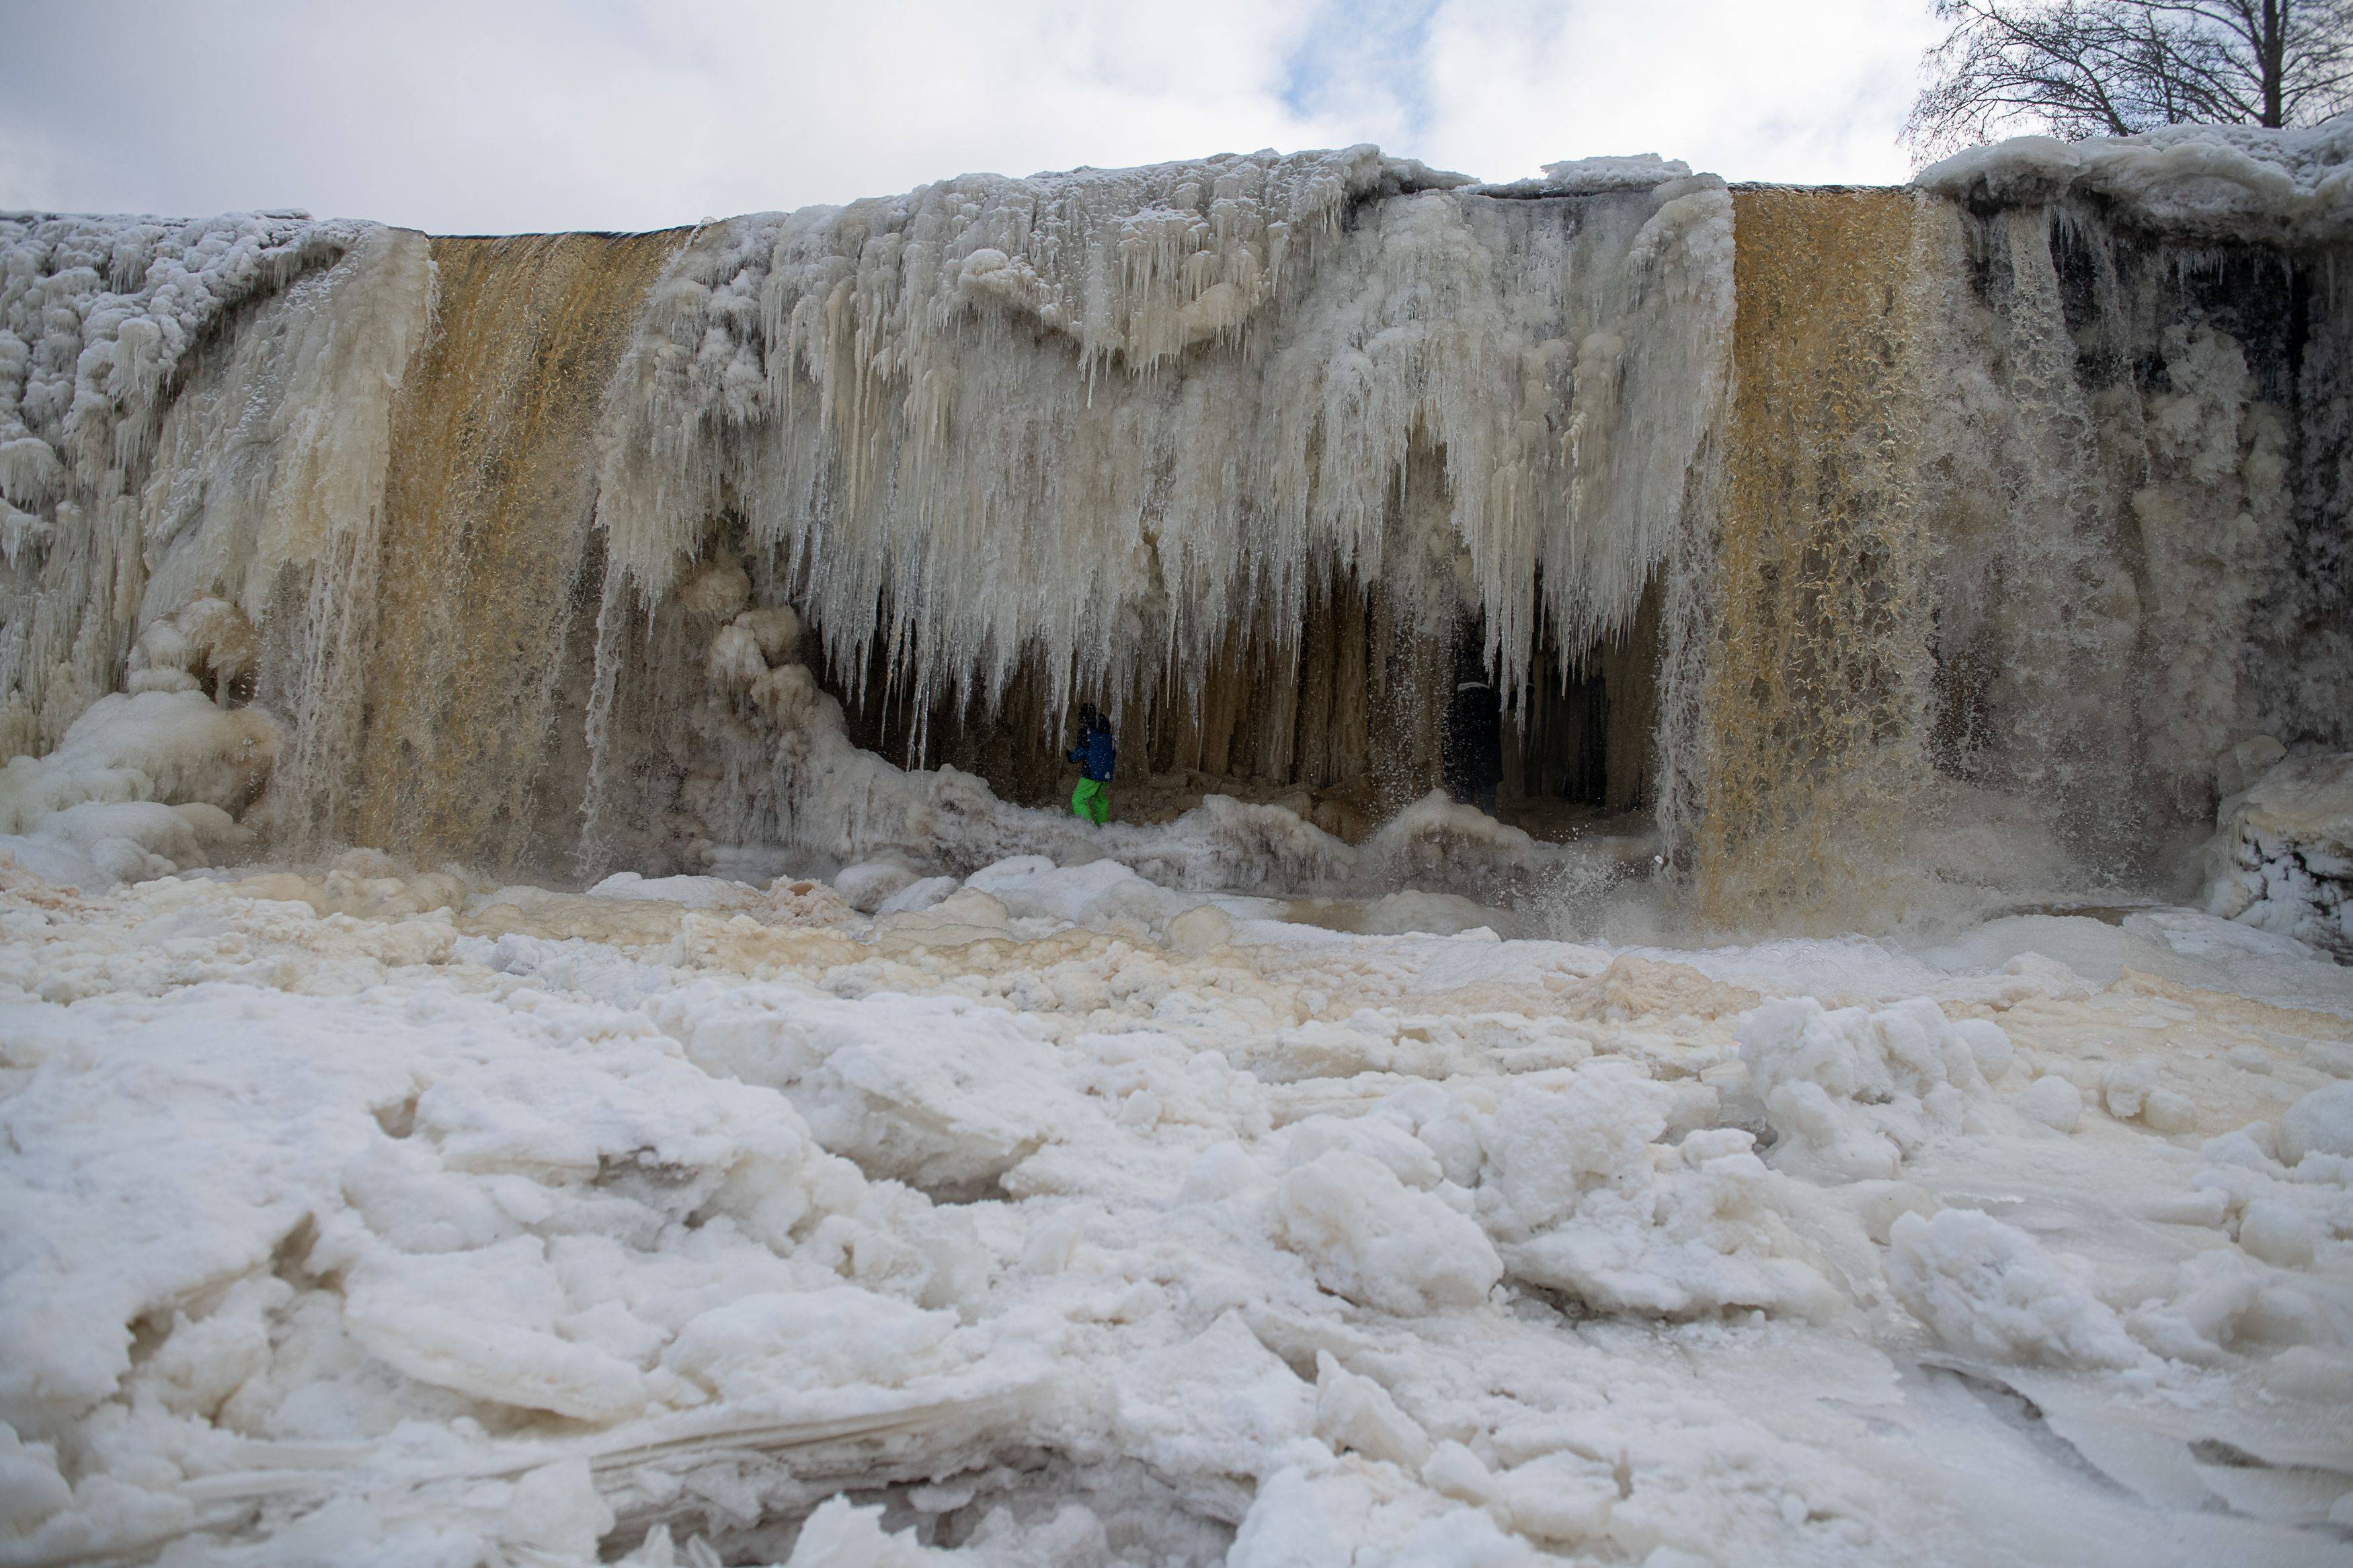 尼亚加拉大瀑布结冰图片